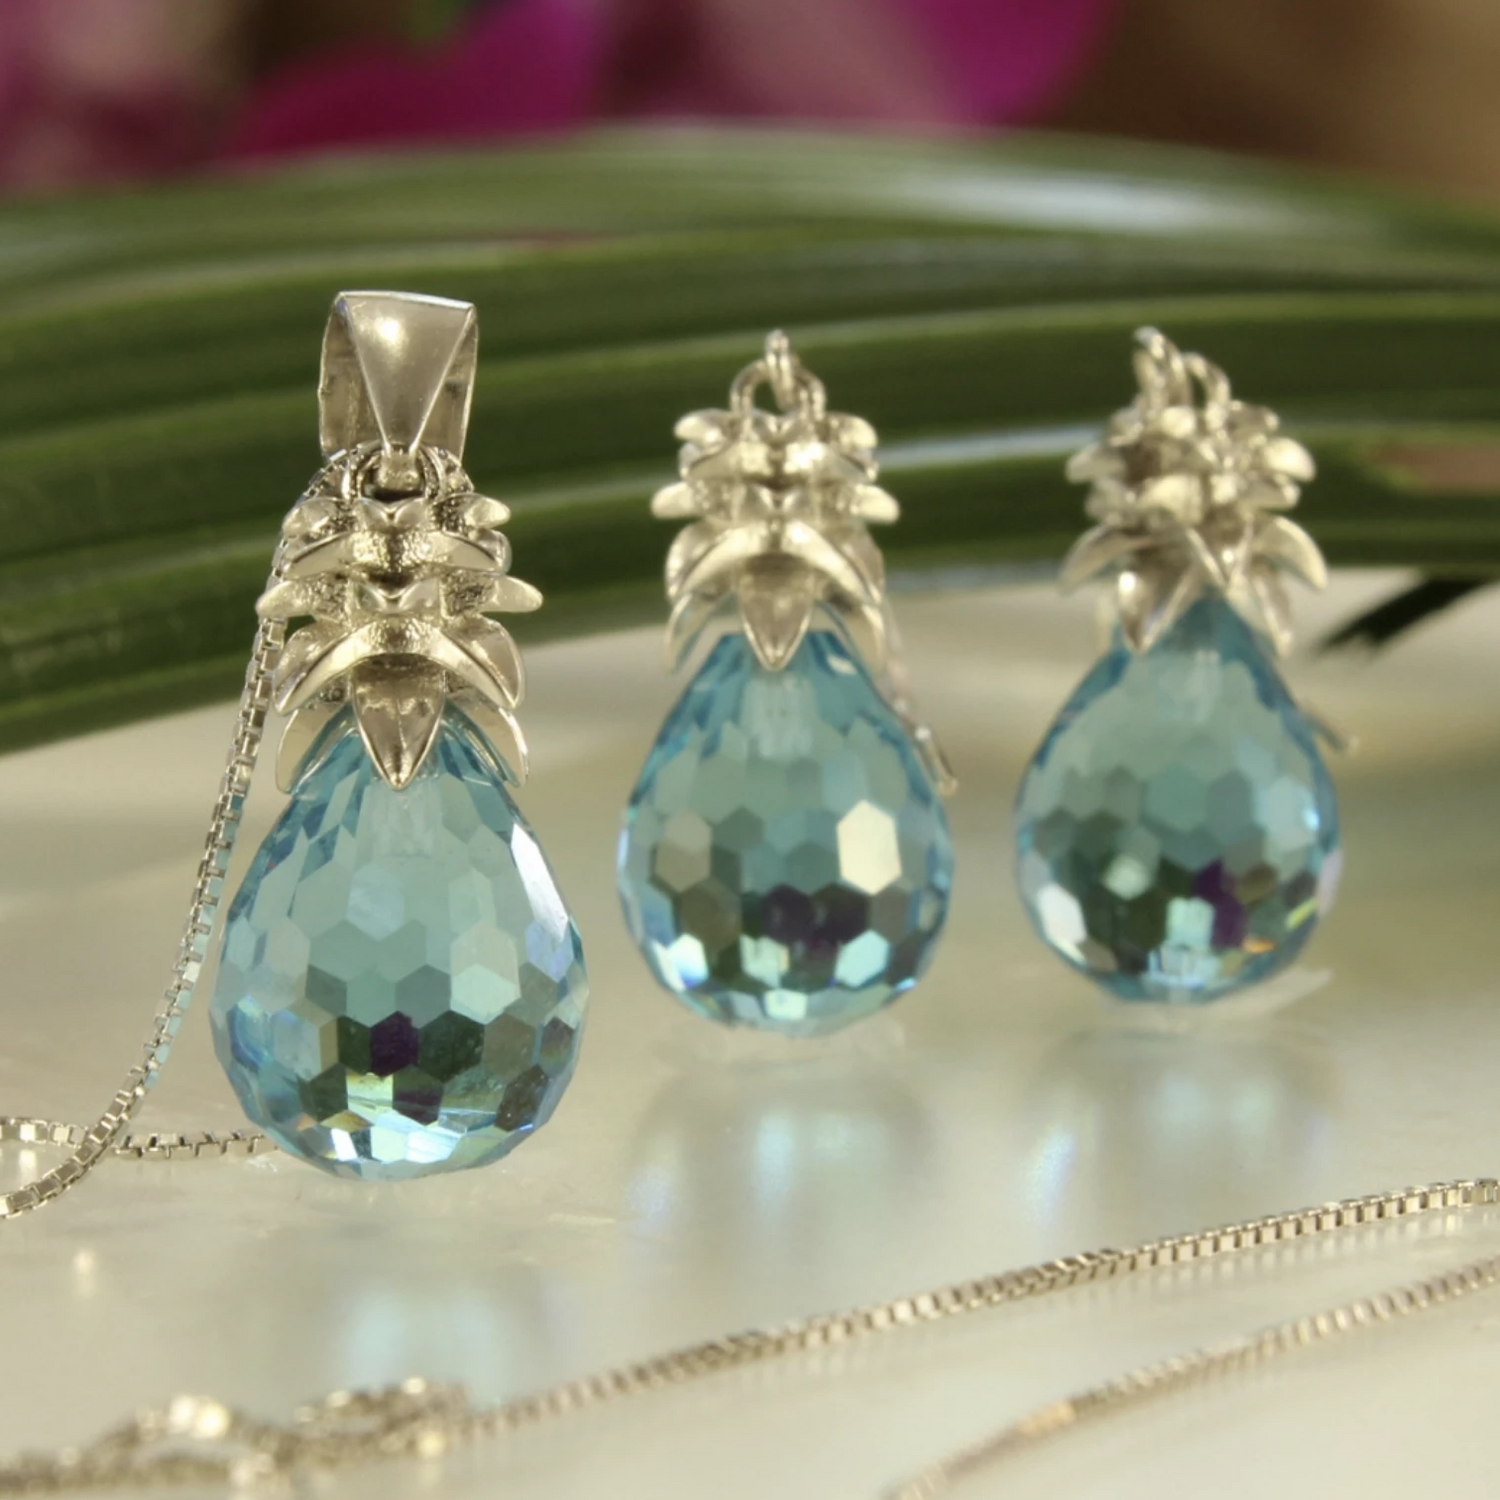 Crystal Pineapple Earrings & Pendant Set in Ocean Blue